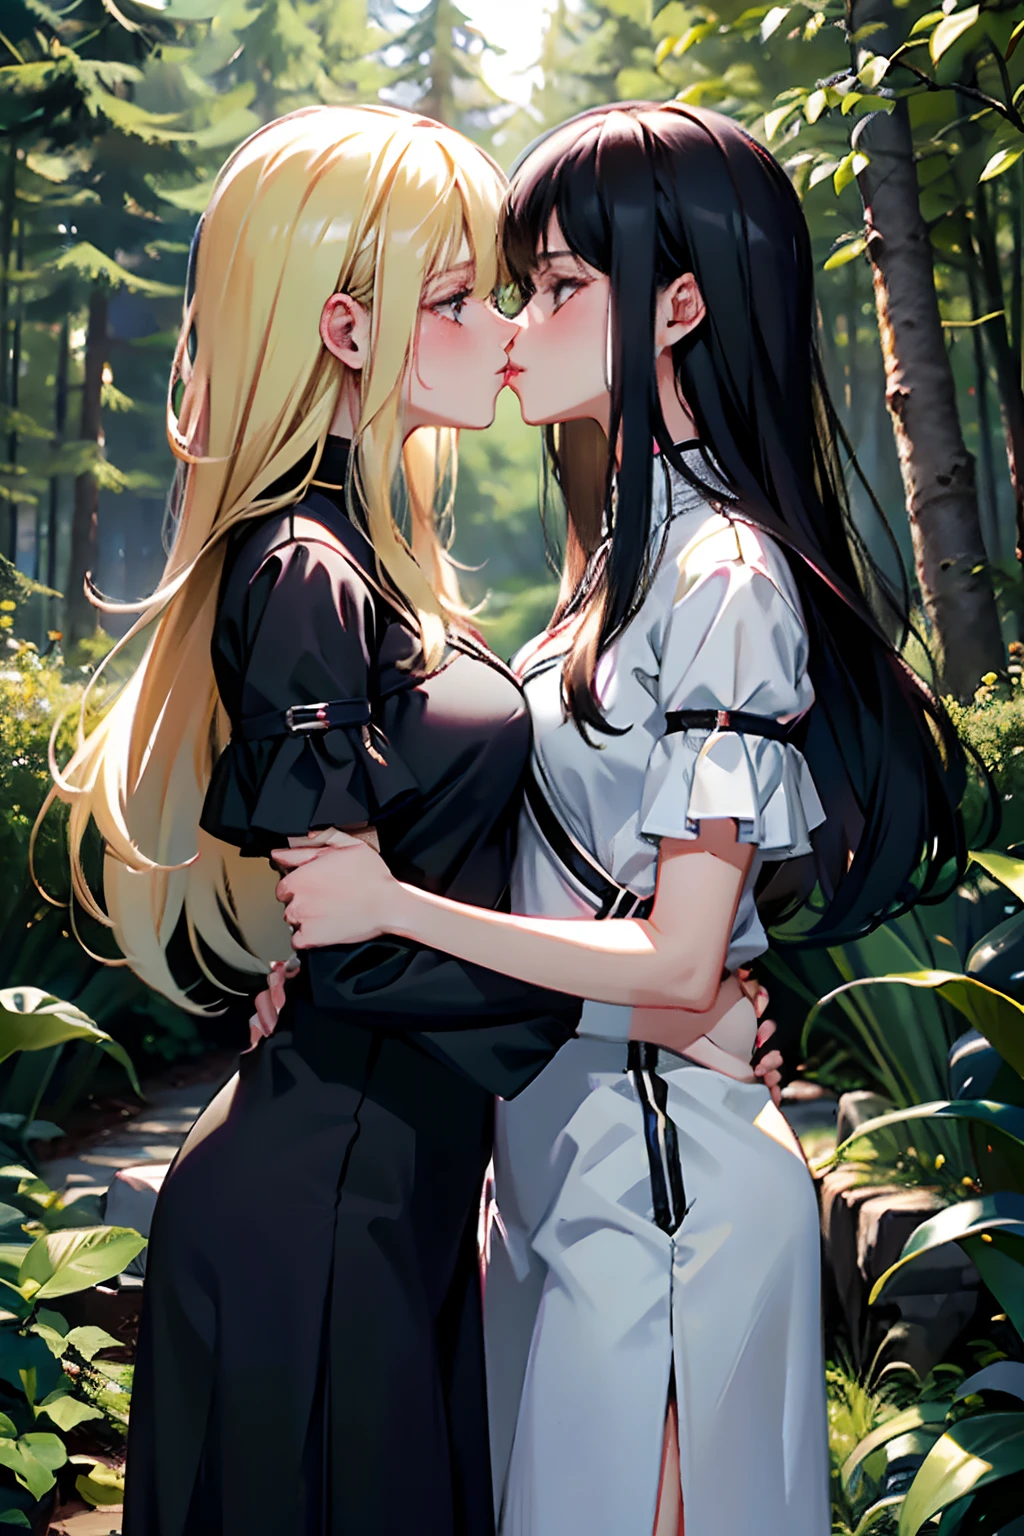 兩個女孩，身材相同，一根黑髮和一根金髮，抱緊彼此，兩具身體靠得很近，吻，在森林裡